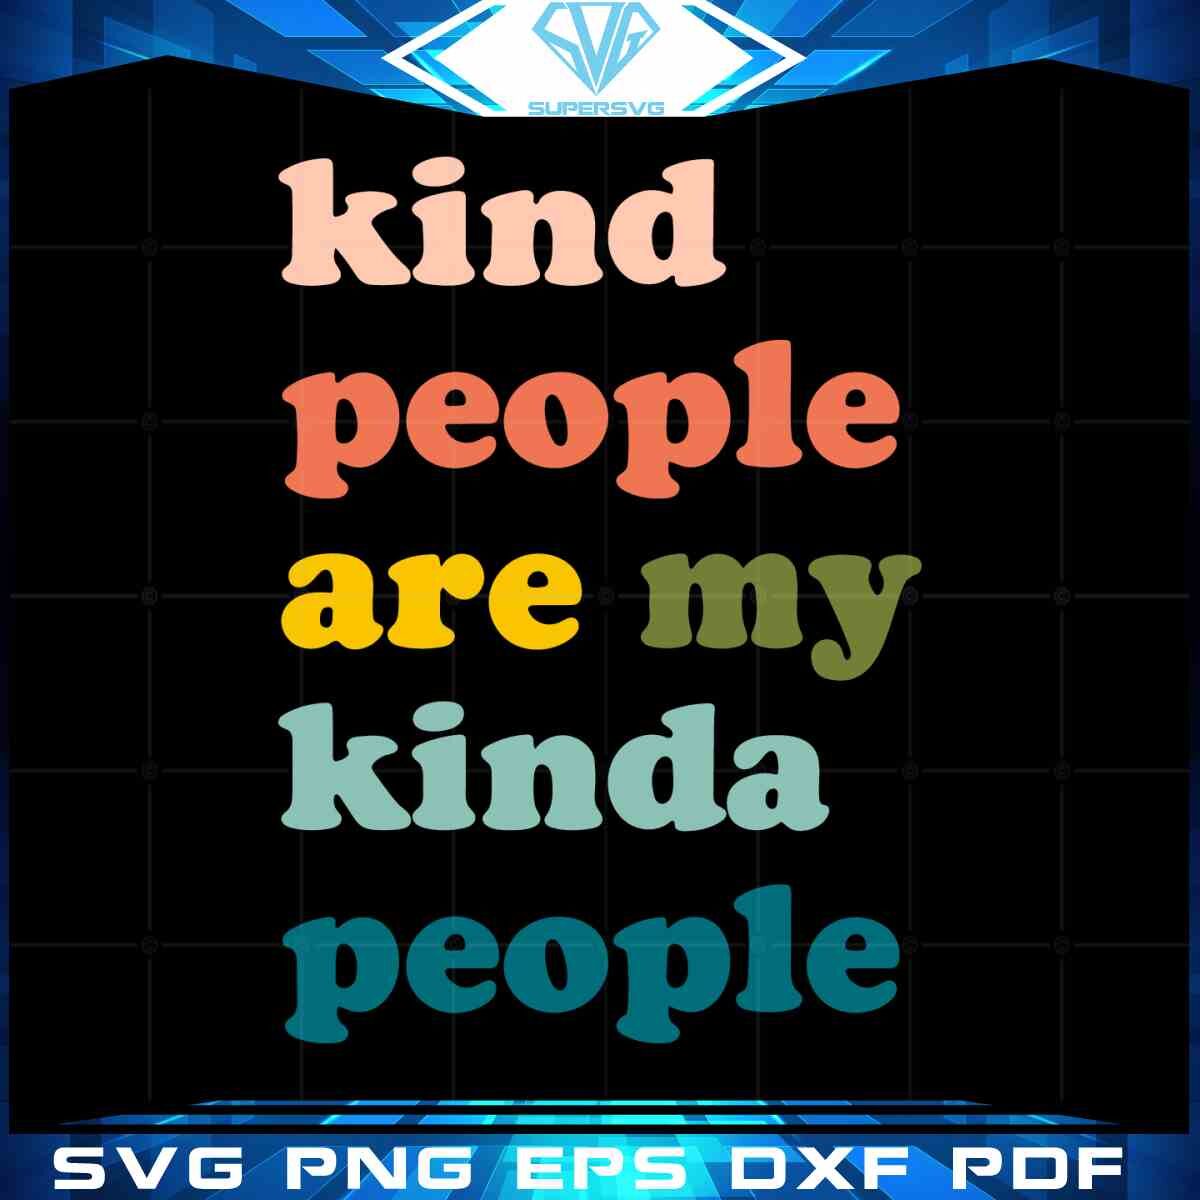 kindness-be-kind-kind-people-are-my-kinda-people-svg-cut-files